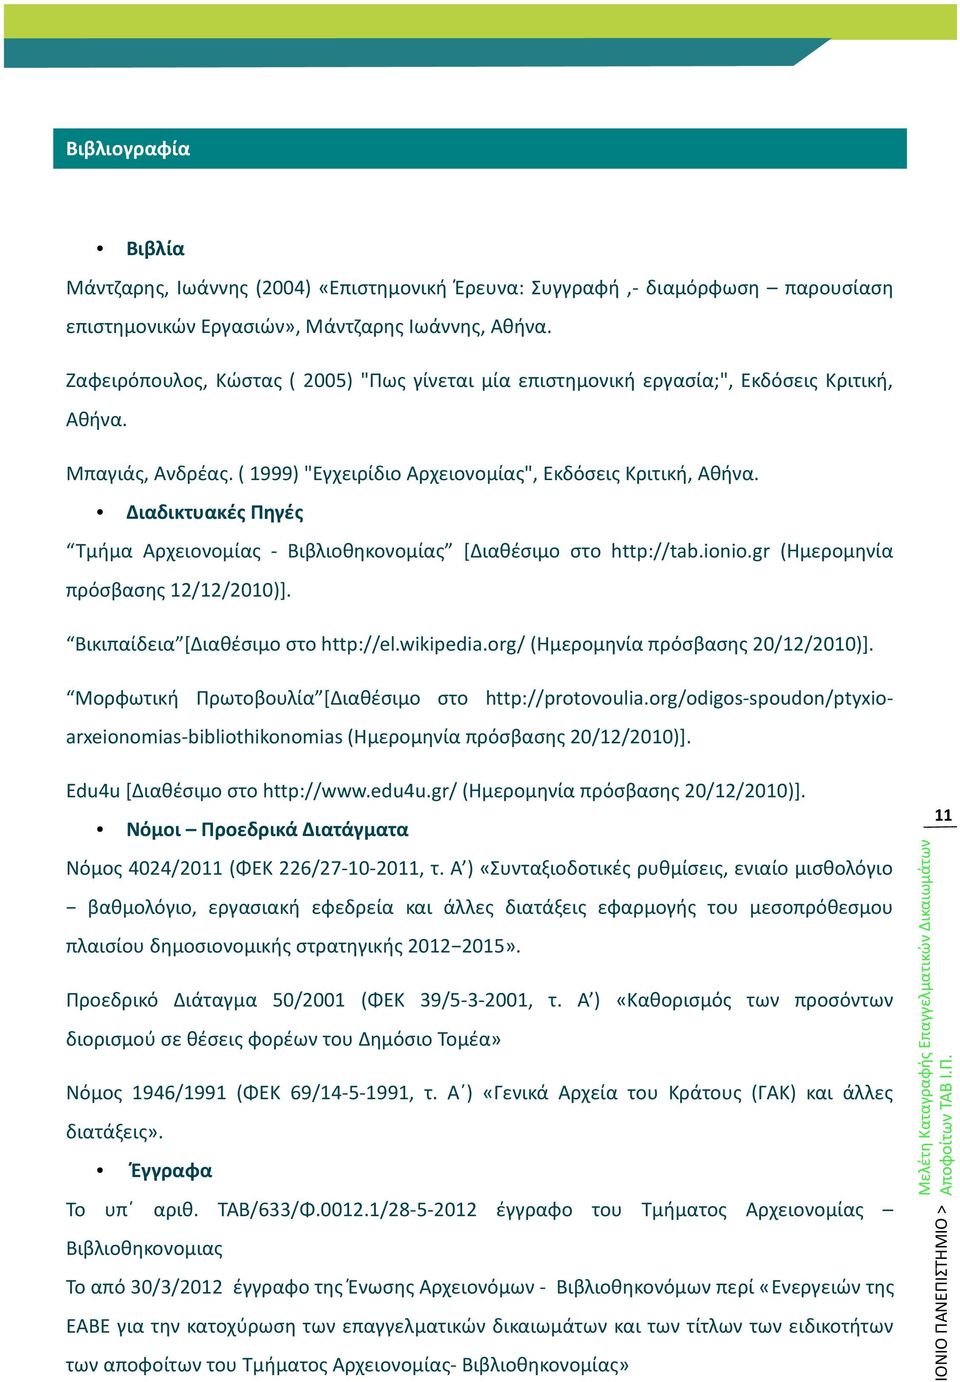 Διαδικτυακές Πηγές Tμήμα Αρχειονομίας - Βιβλιοθηκονομίας [Διαθέσιμο στο http://tab.ionio.gr (Ημερομηνία πρόσβασης 12/12/2010)]. Βικιπαίδεια [Διαθέσιμο στο http://el.wikipedia.